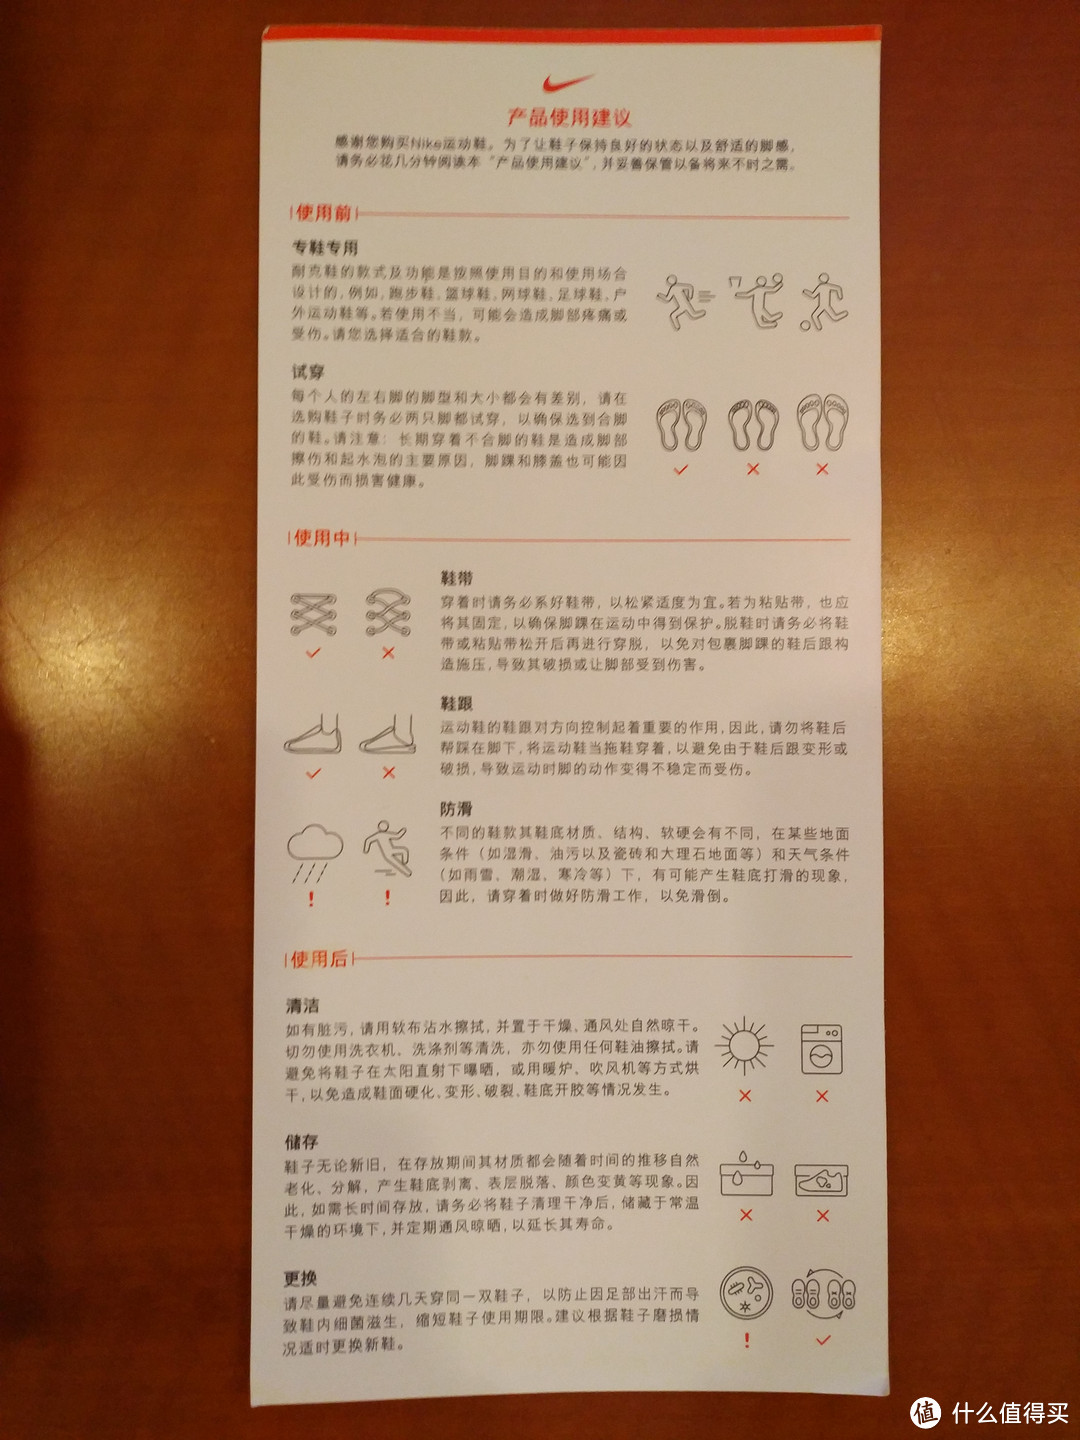 鞋盒内对于鞋的使用建议，另一面是繁体中文